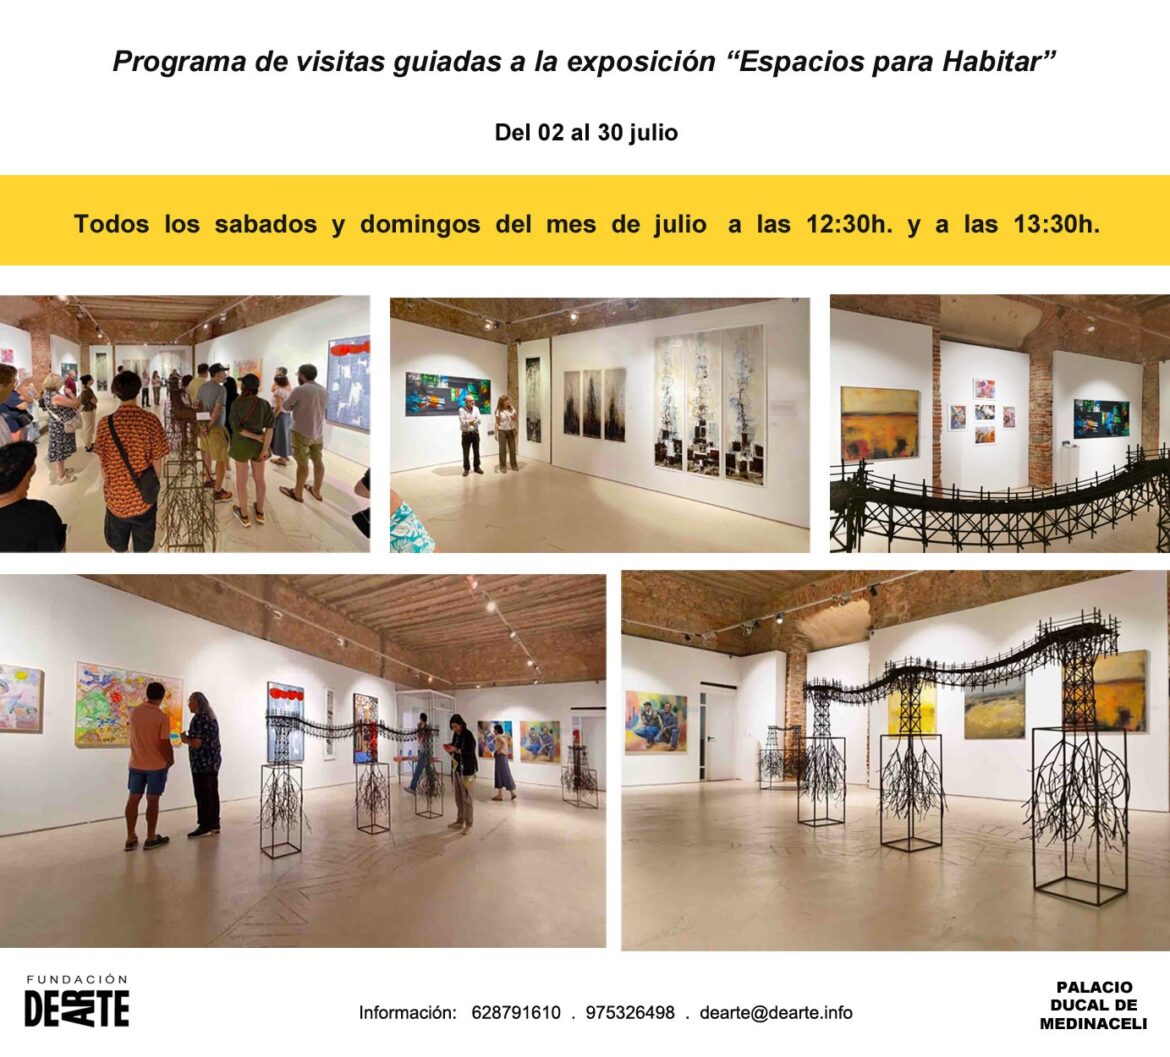 Programa de visitas guiadas a “Espacios para Habitar” exposición en el Palacio Ducal de Medinaceli hasta el 30 de julio